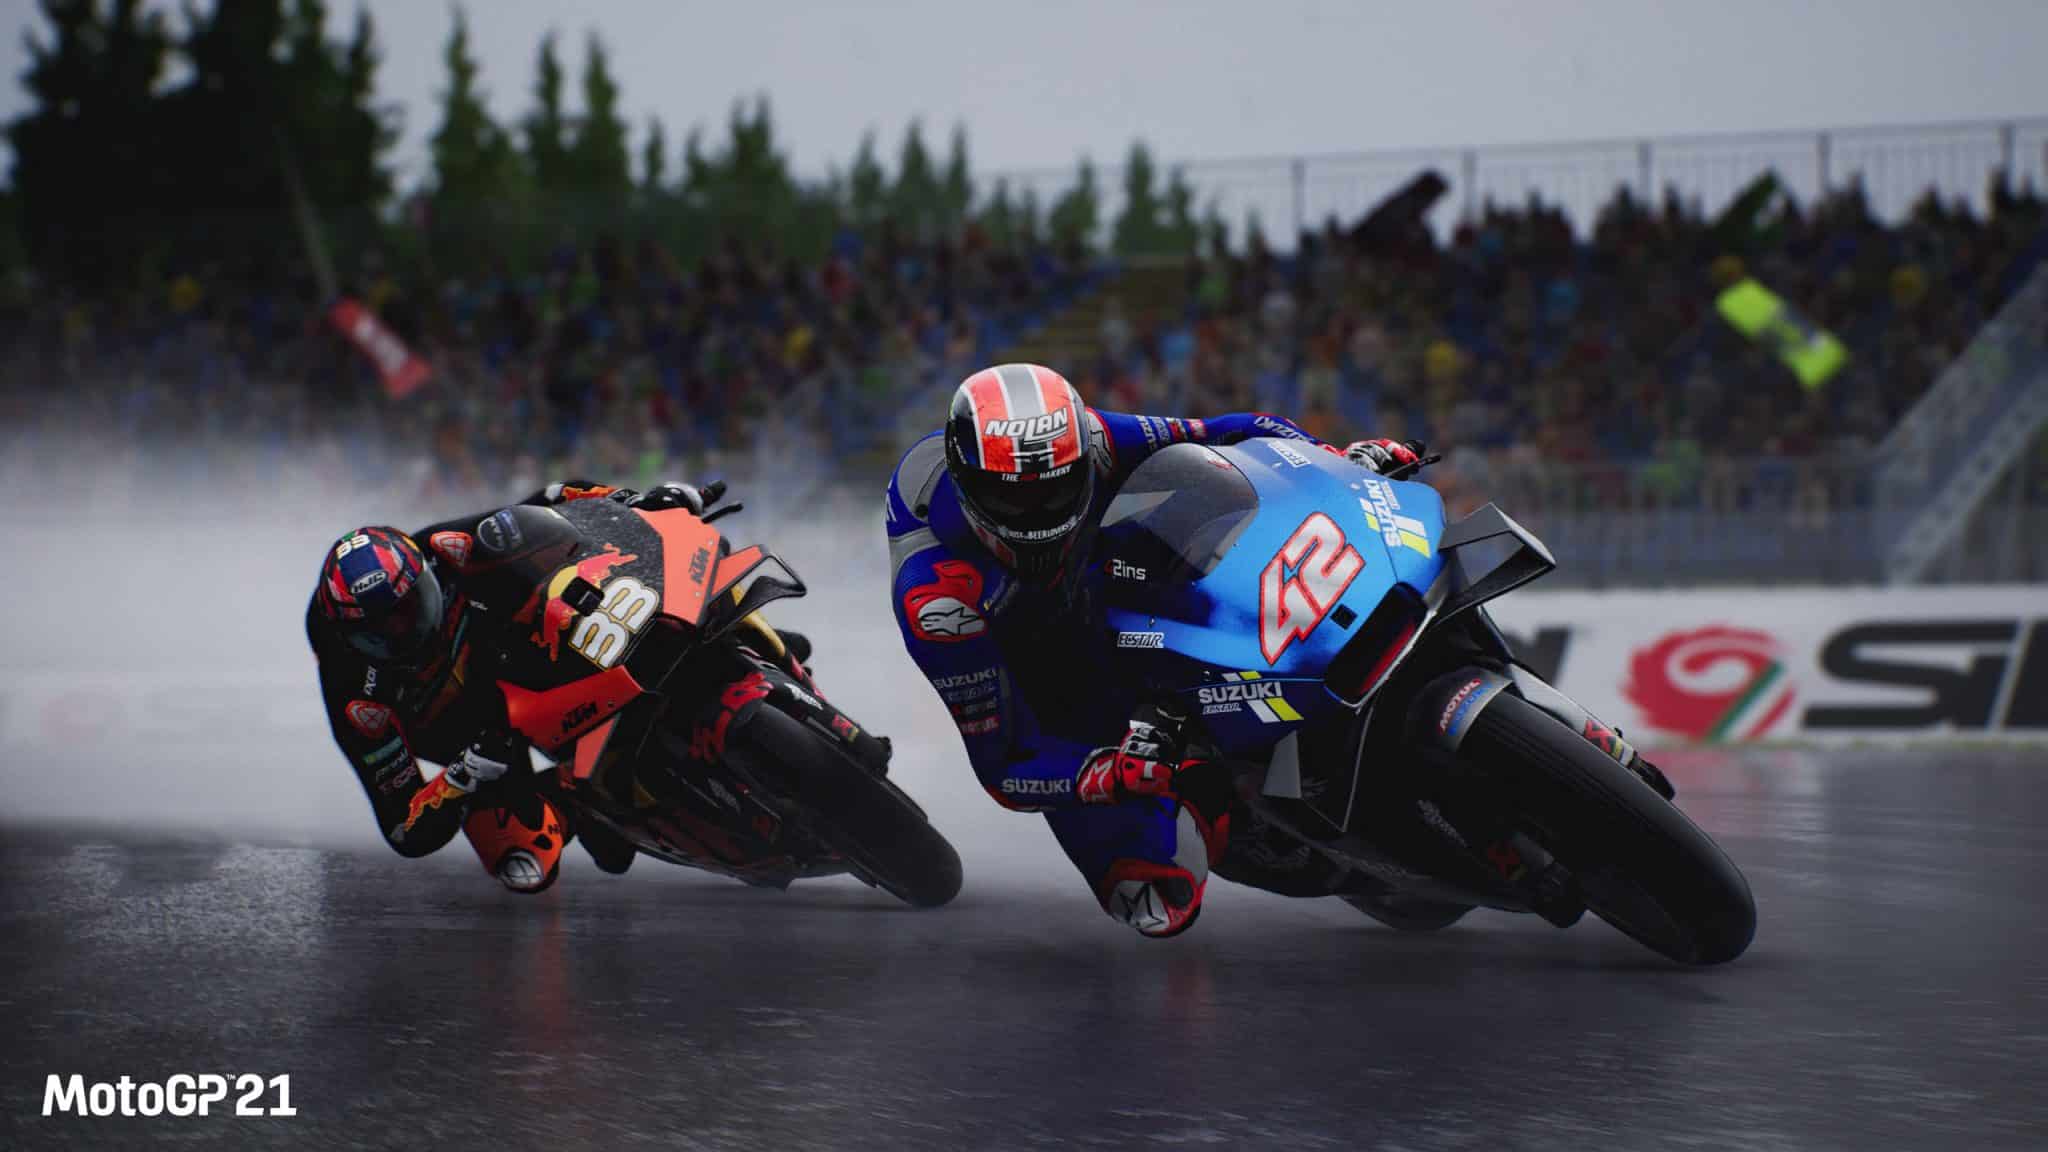 MotoGP21 è già in sconto su Amazon nella sua versione PlayStation 4 1